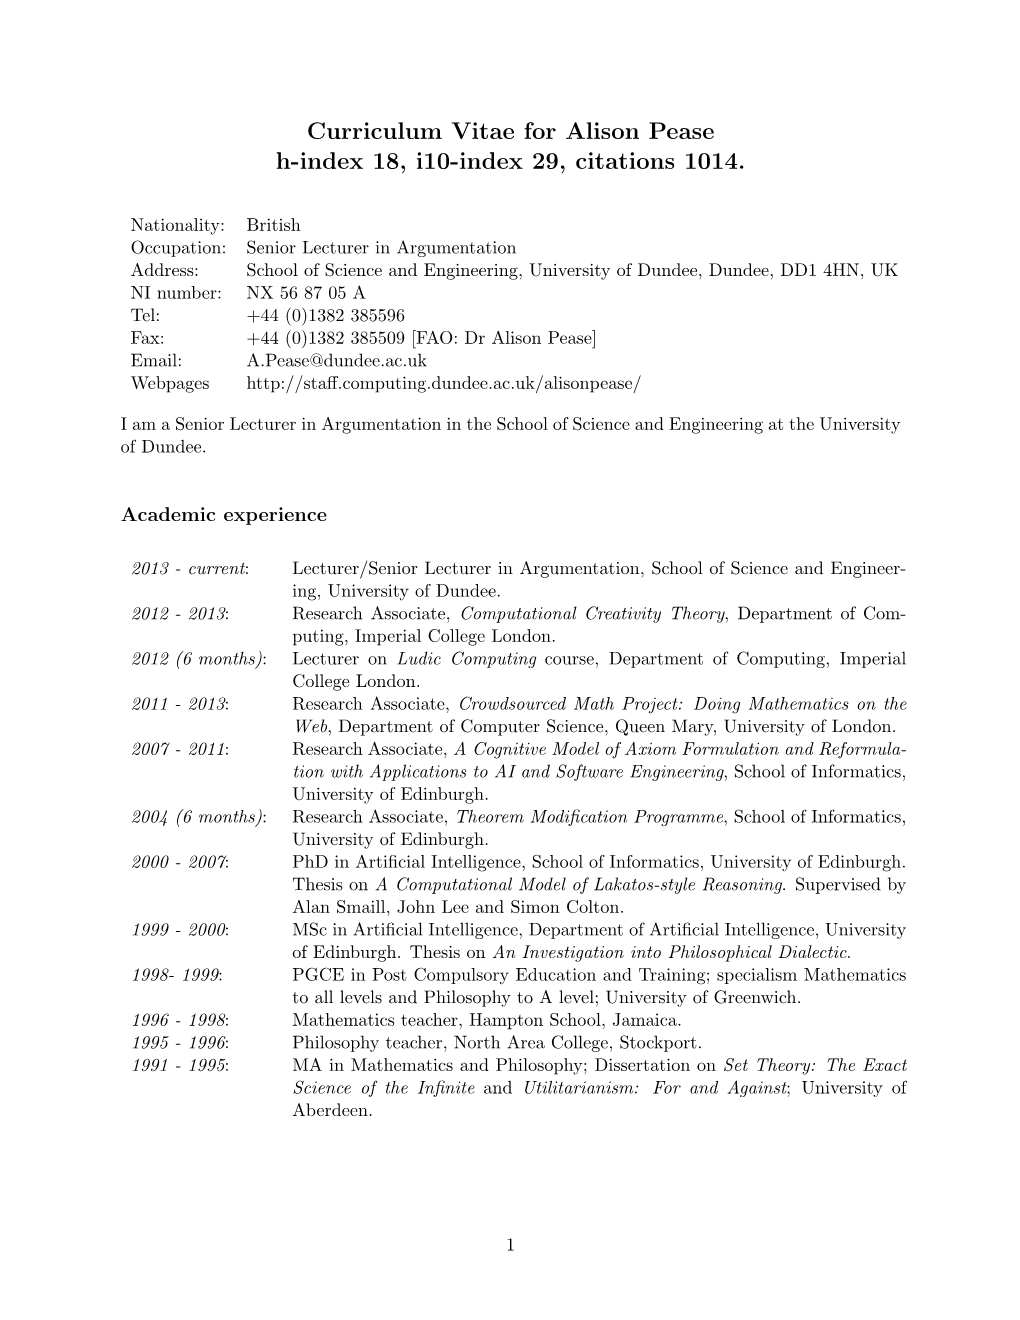 Curriculum Vitae for Alison Pease H-Index 18, I10-Index 29, Citations 1014